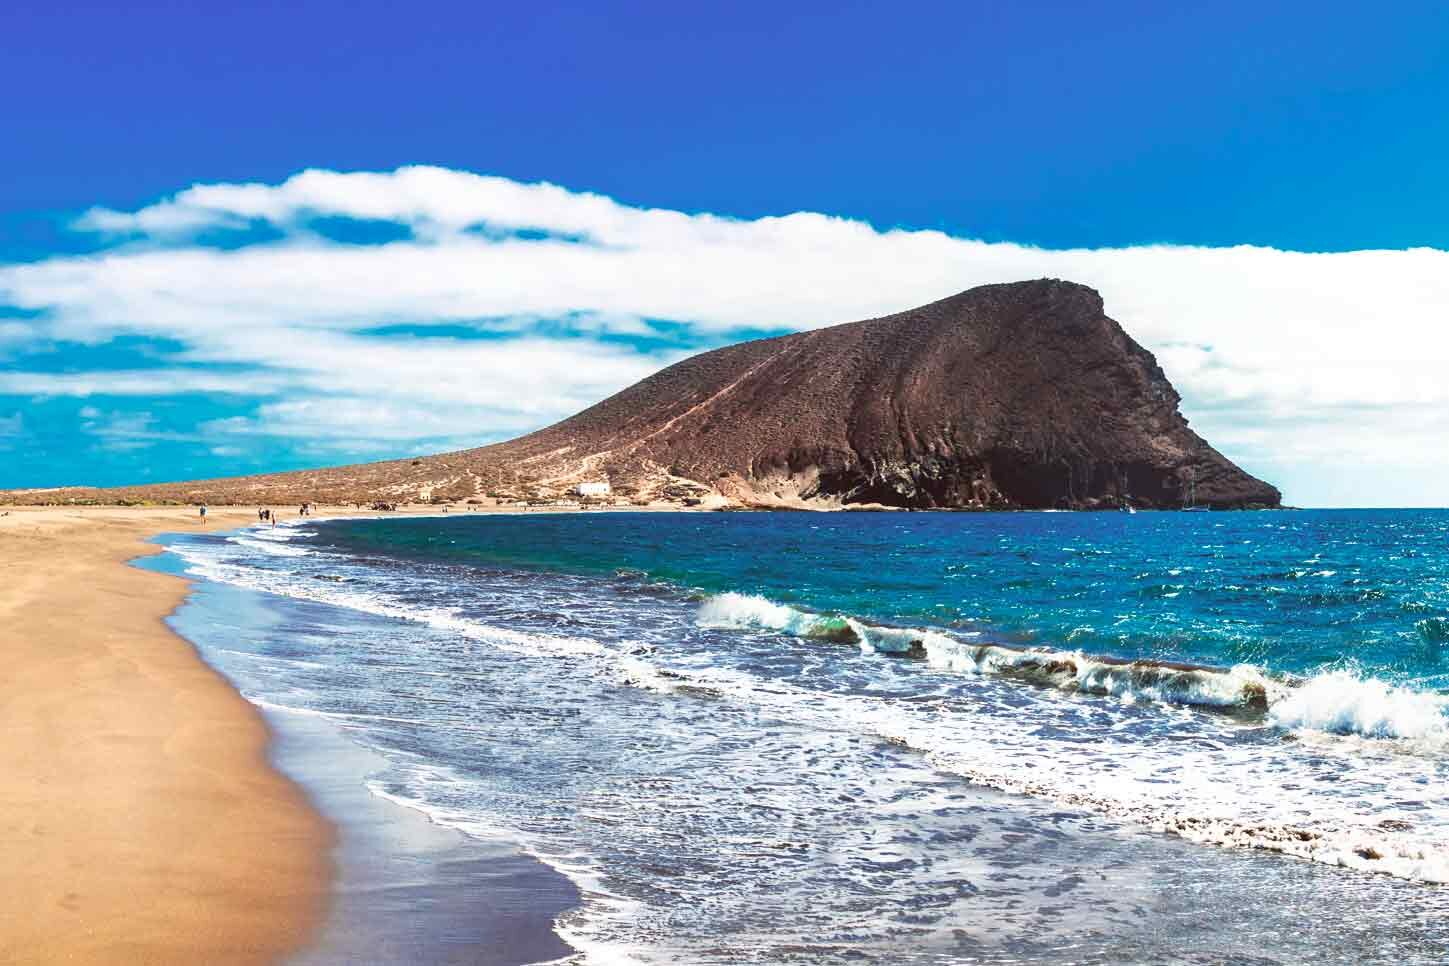 MEJORES PLAYAS ARENA BLANCA CANARIAS: Las espectaculares playas de